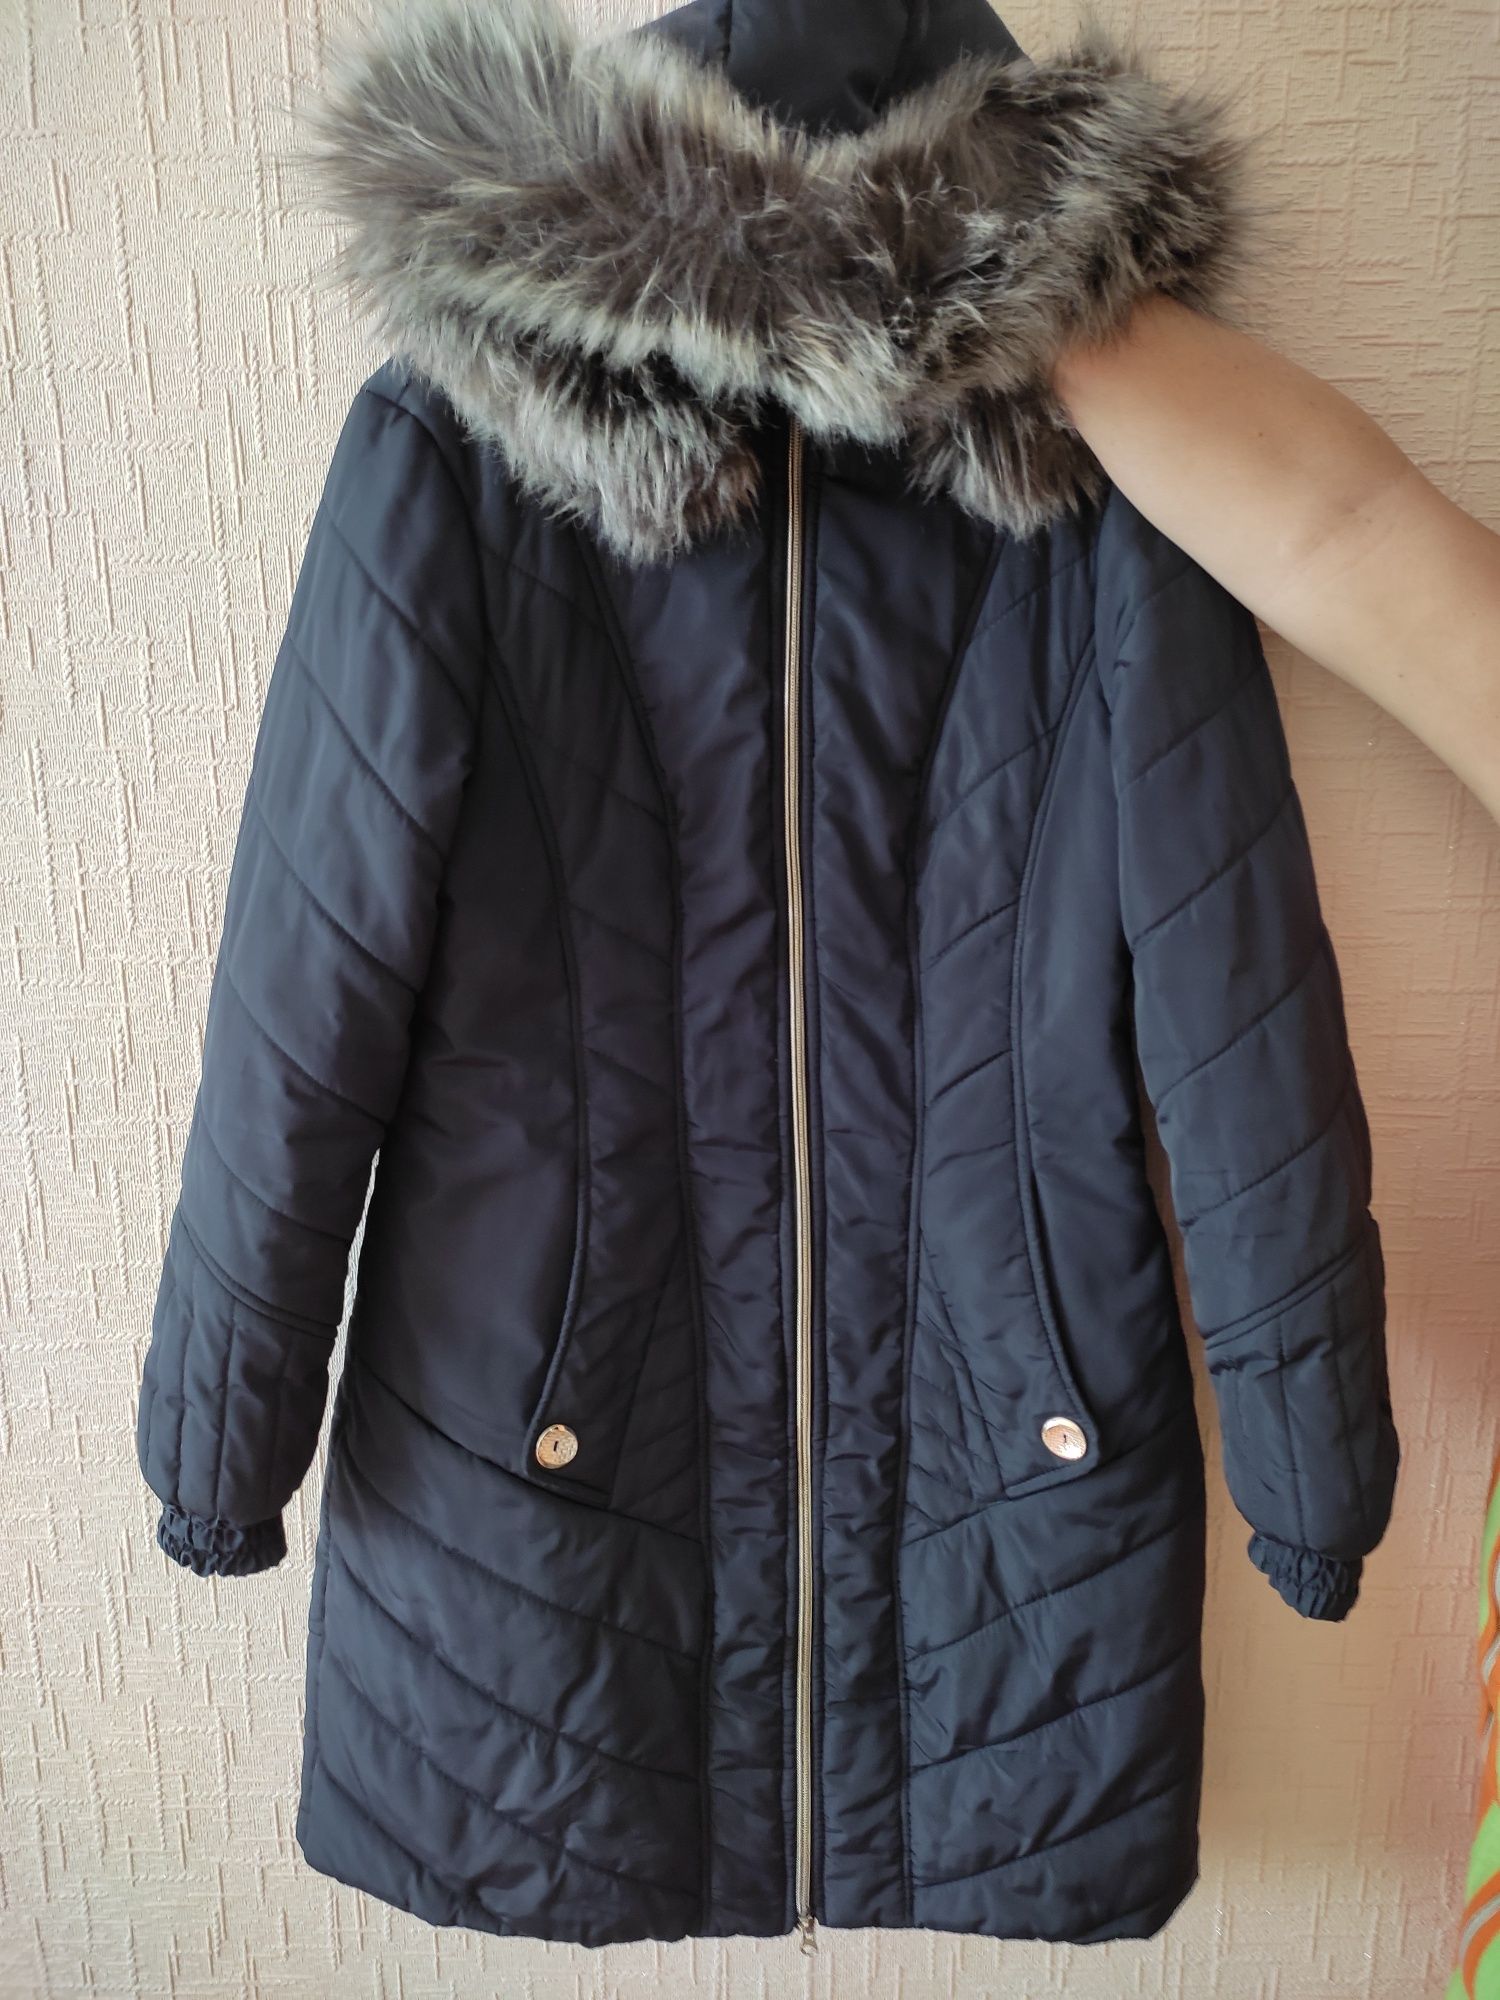 Зимняя хорошая куртка , лёгое пальто на синтепоне 44-46р.